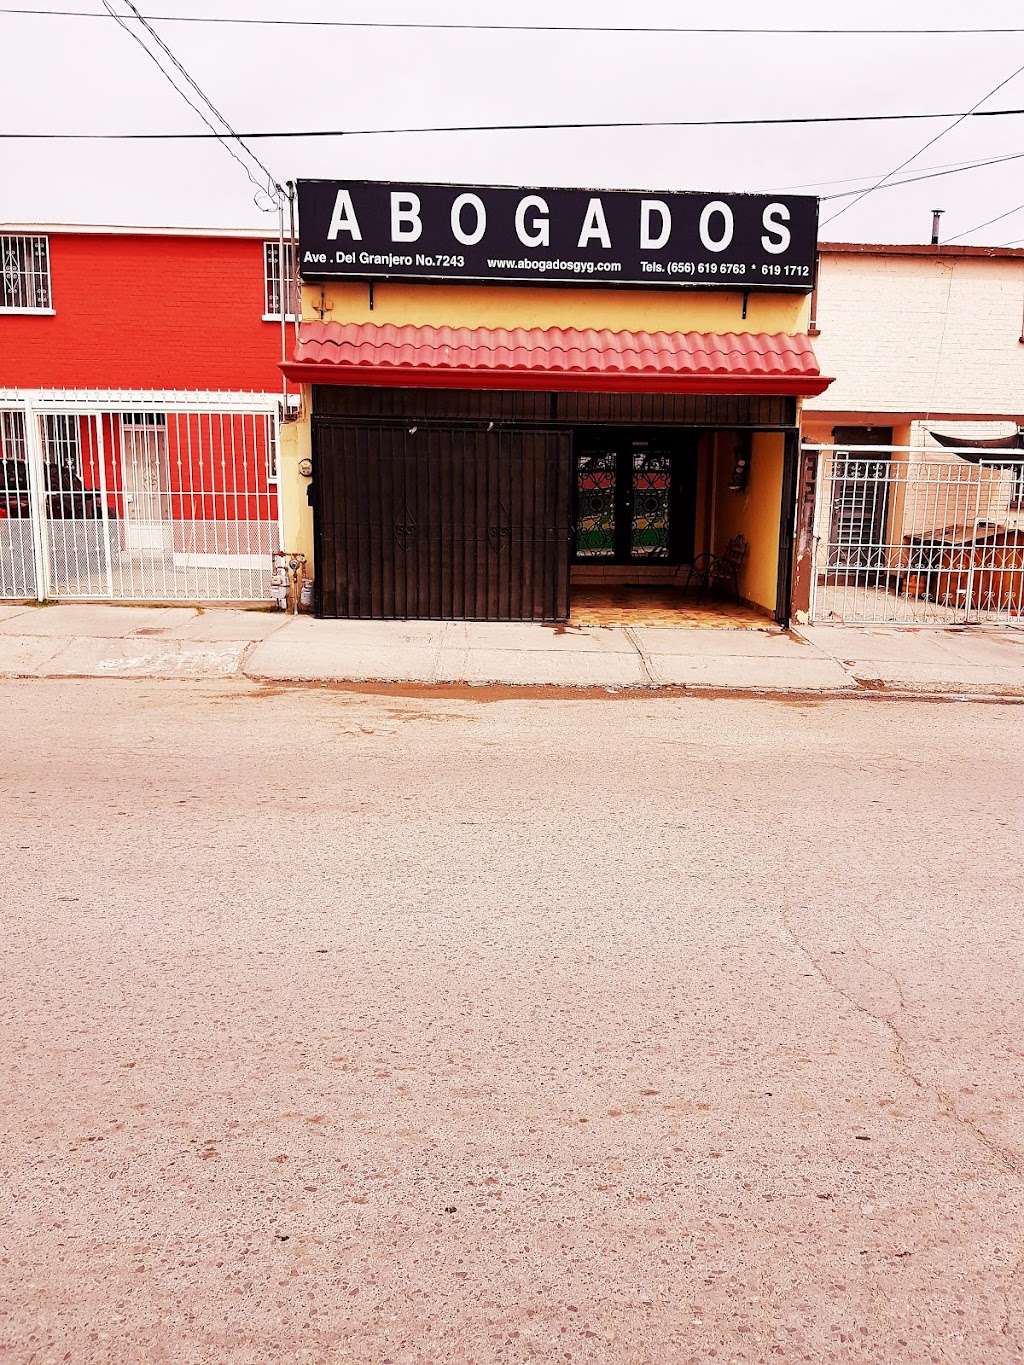 Abogados G y G | Del Granjero 7243, Oasis, 32697 Cd Juárez, Chih., Mexico | Phone: 656 619 6763